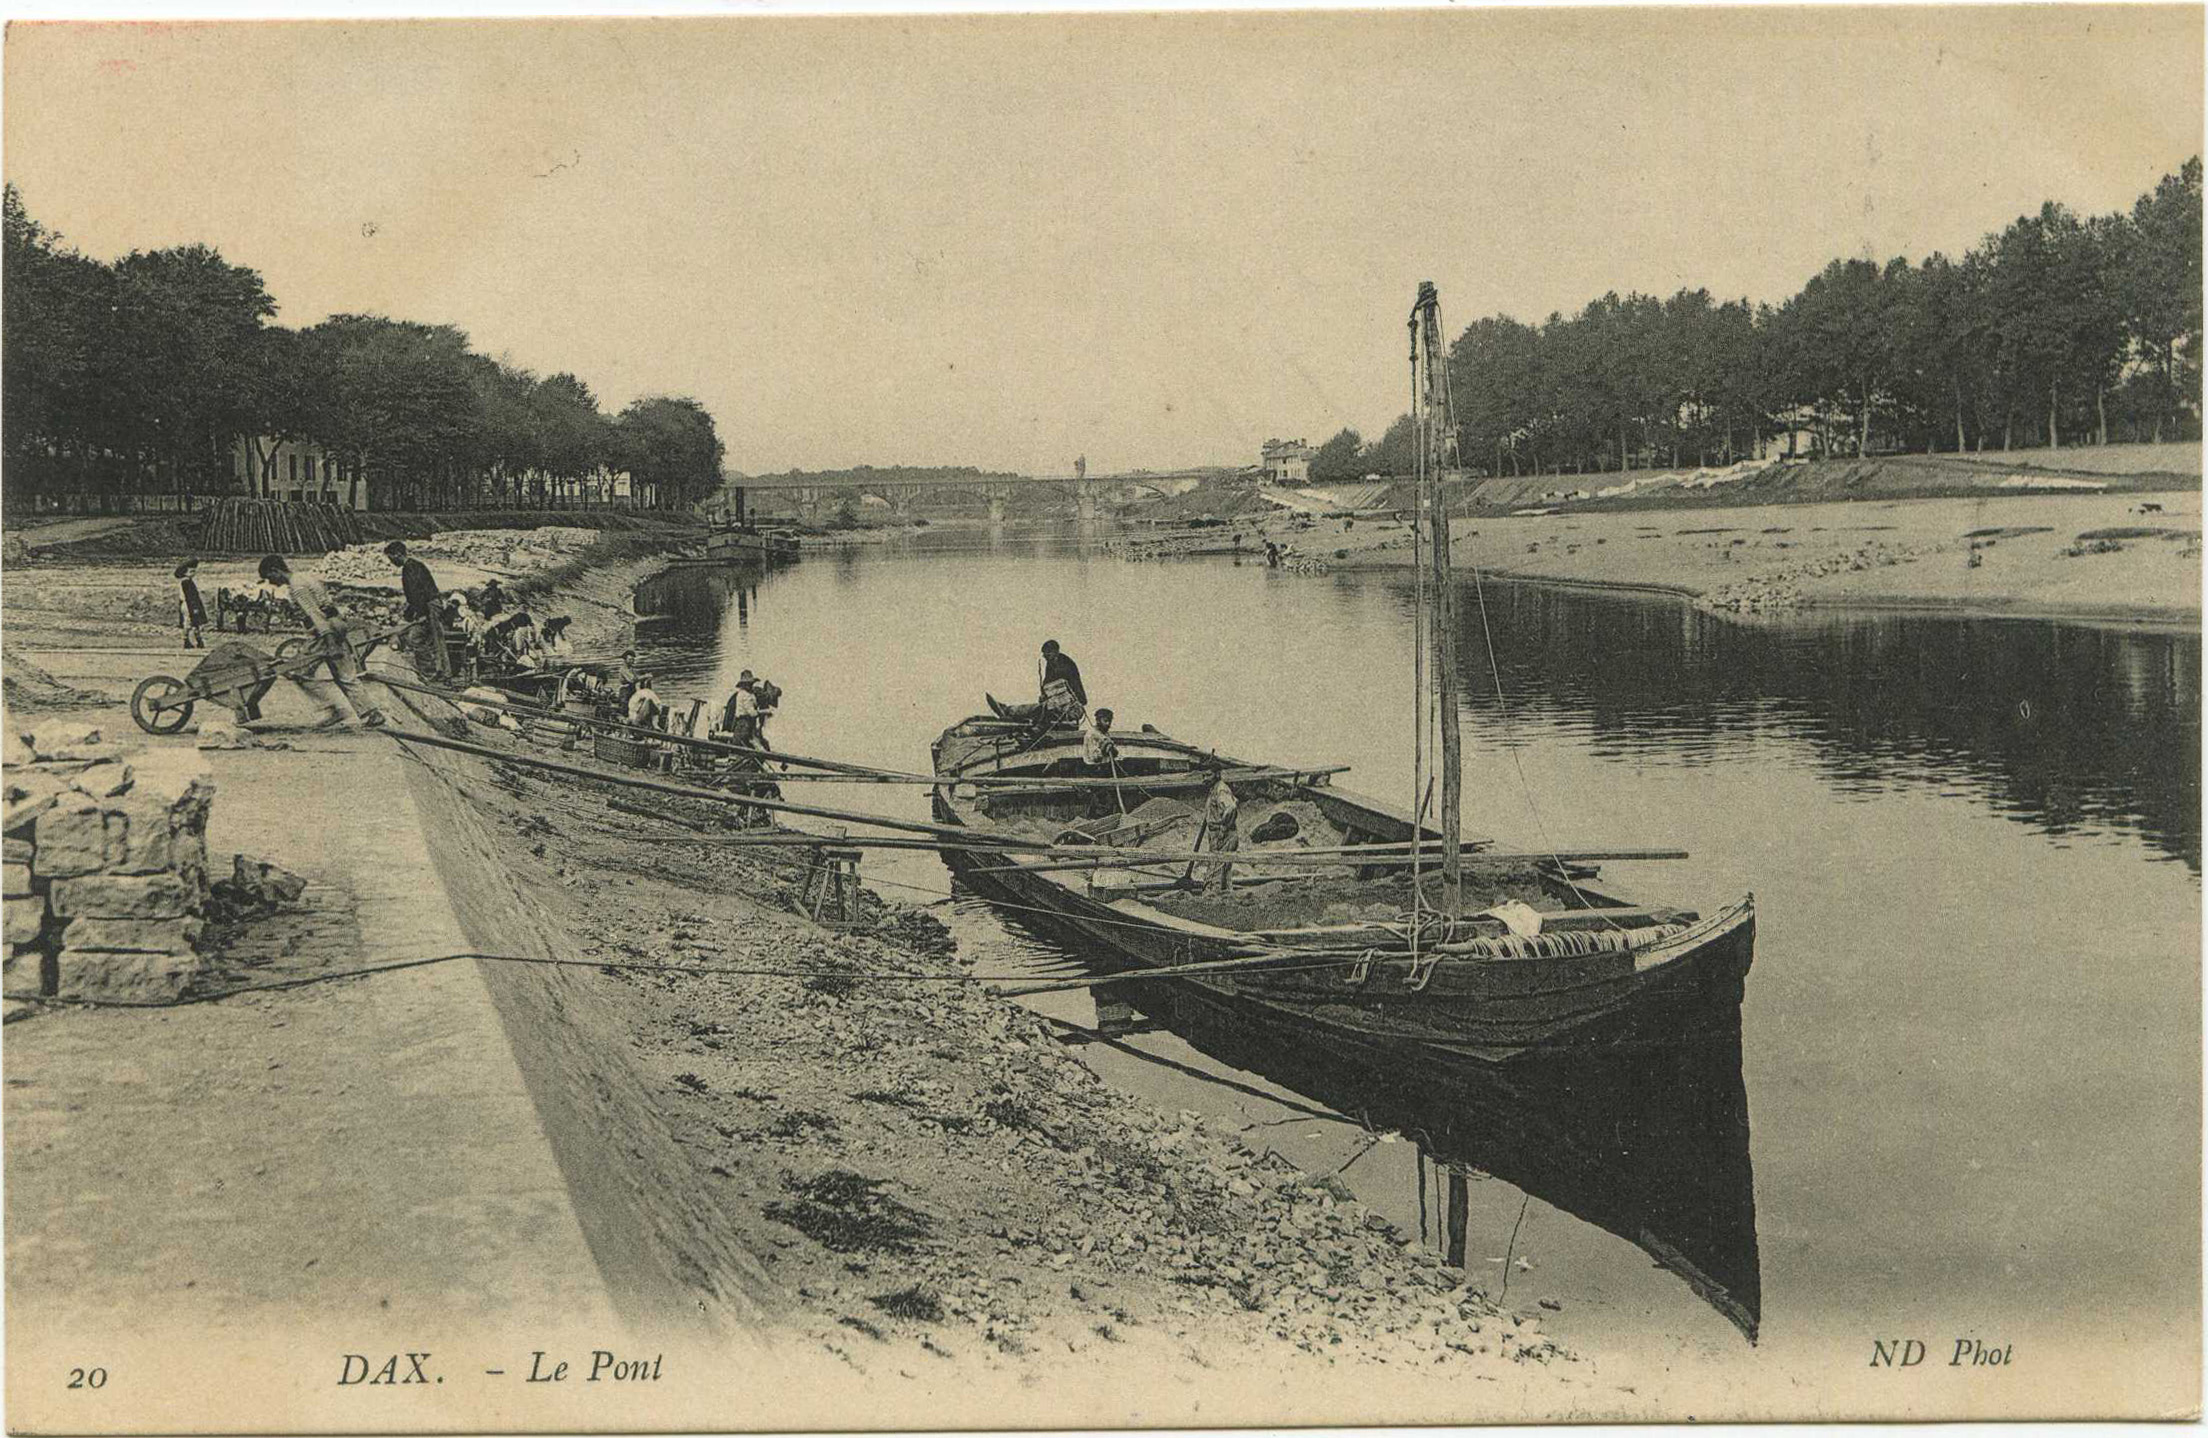 Dax - Le Pont